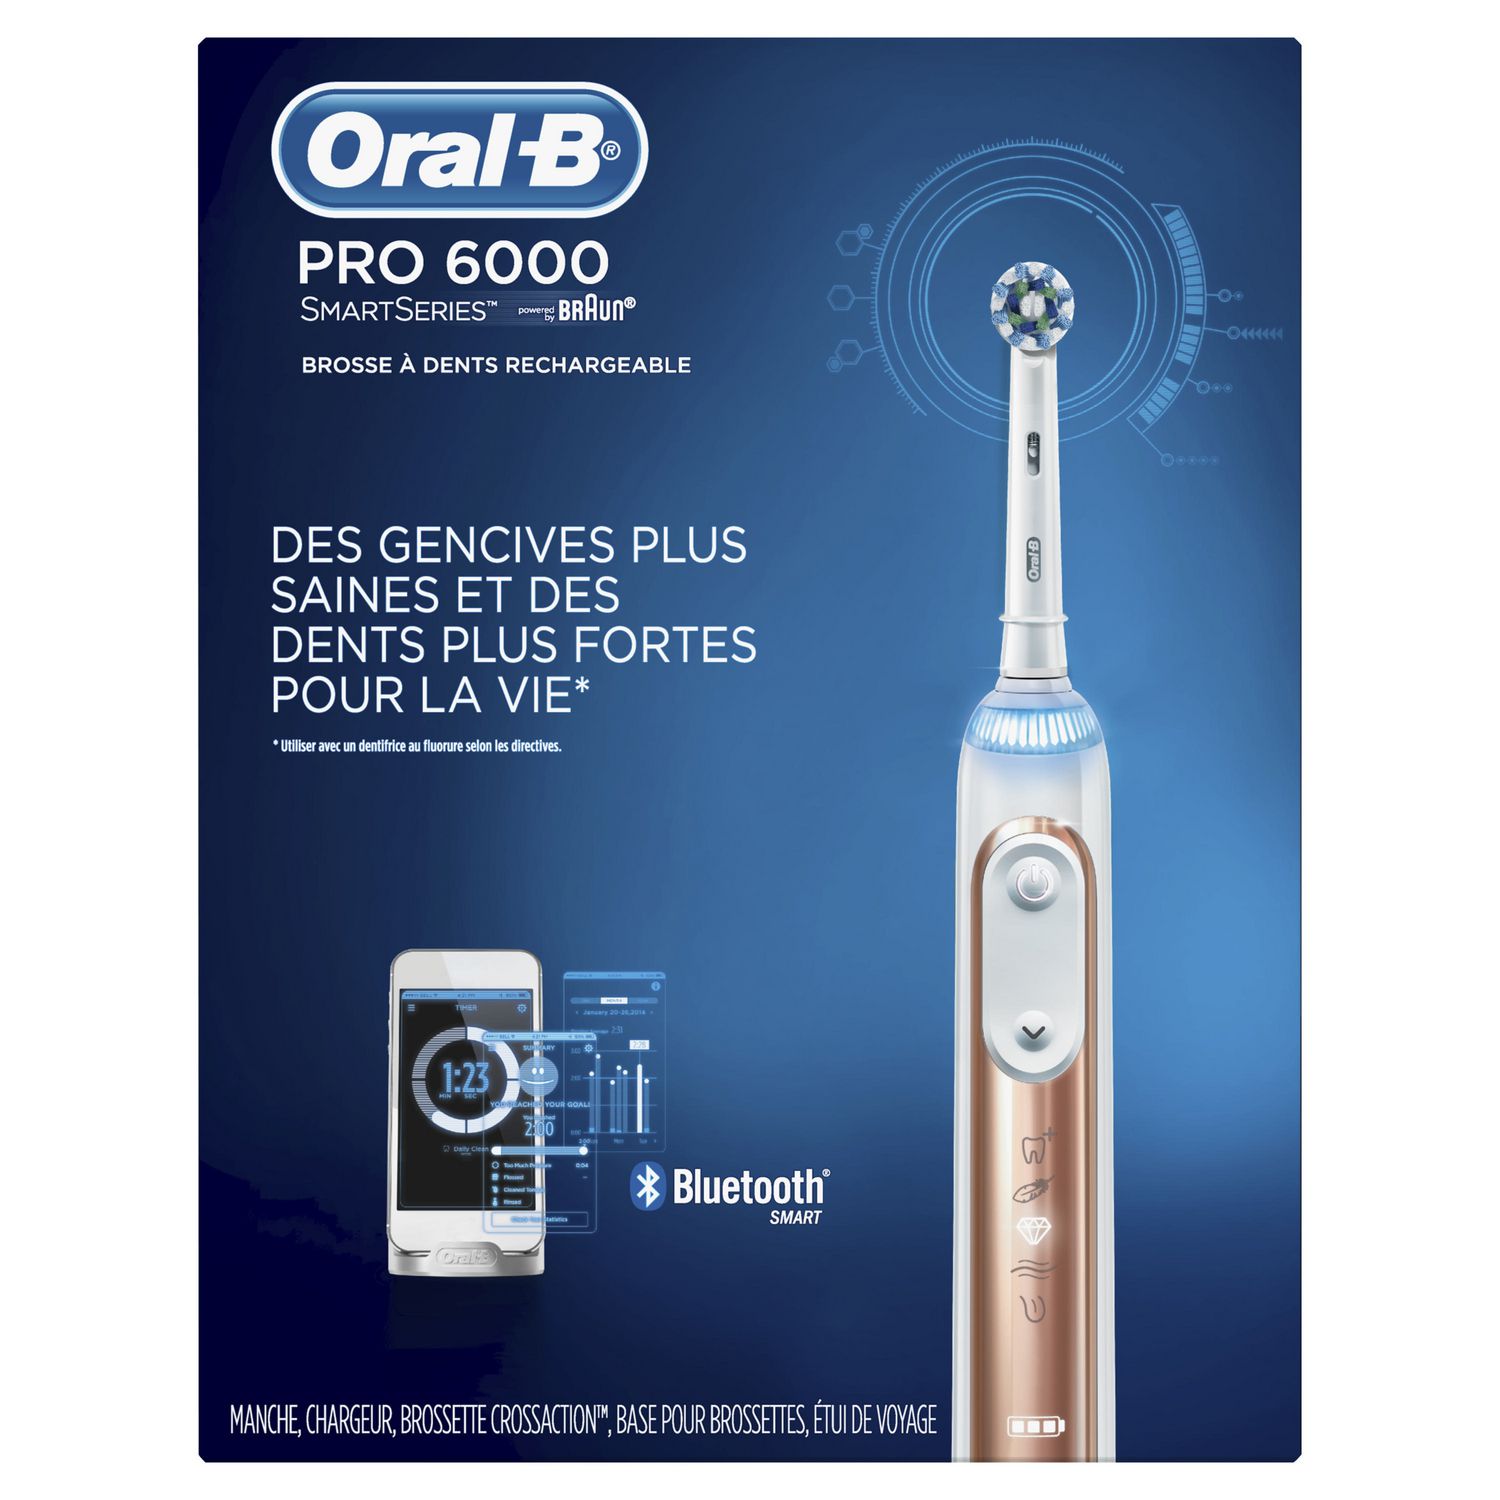 fiets Verbonden Zakenman Oral B Pro 6000 SmartSeries Braun Toothbrush | Walmart Canada